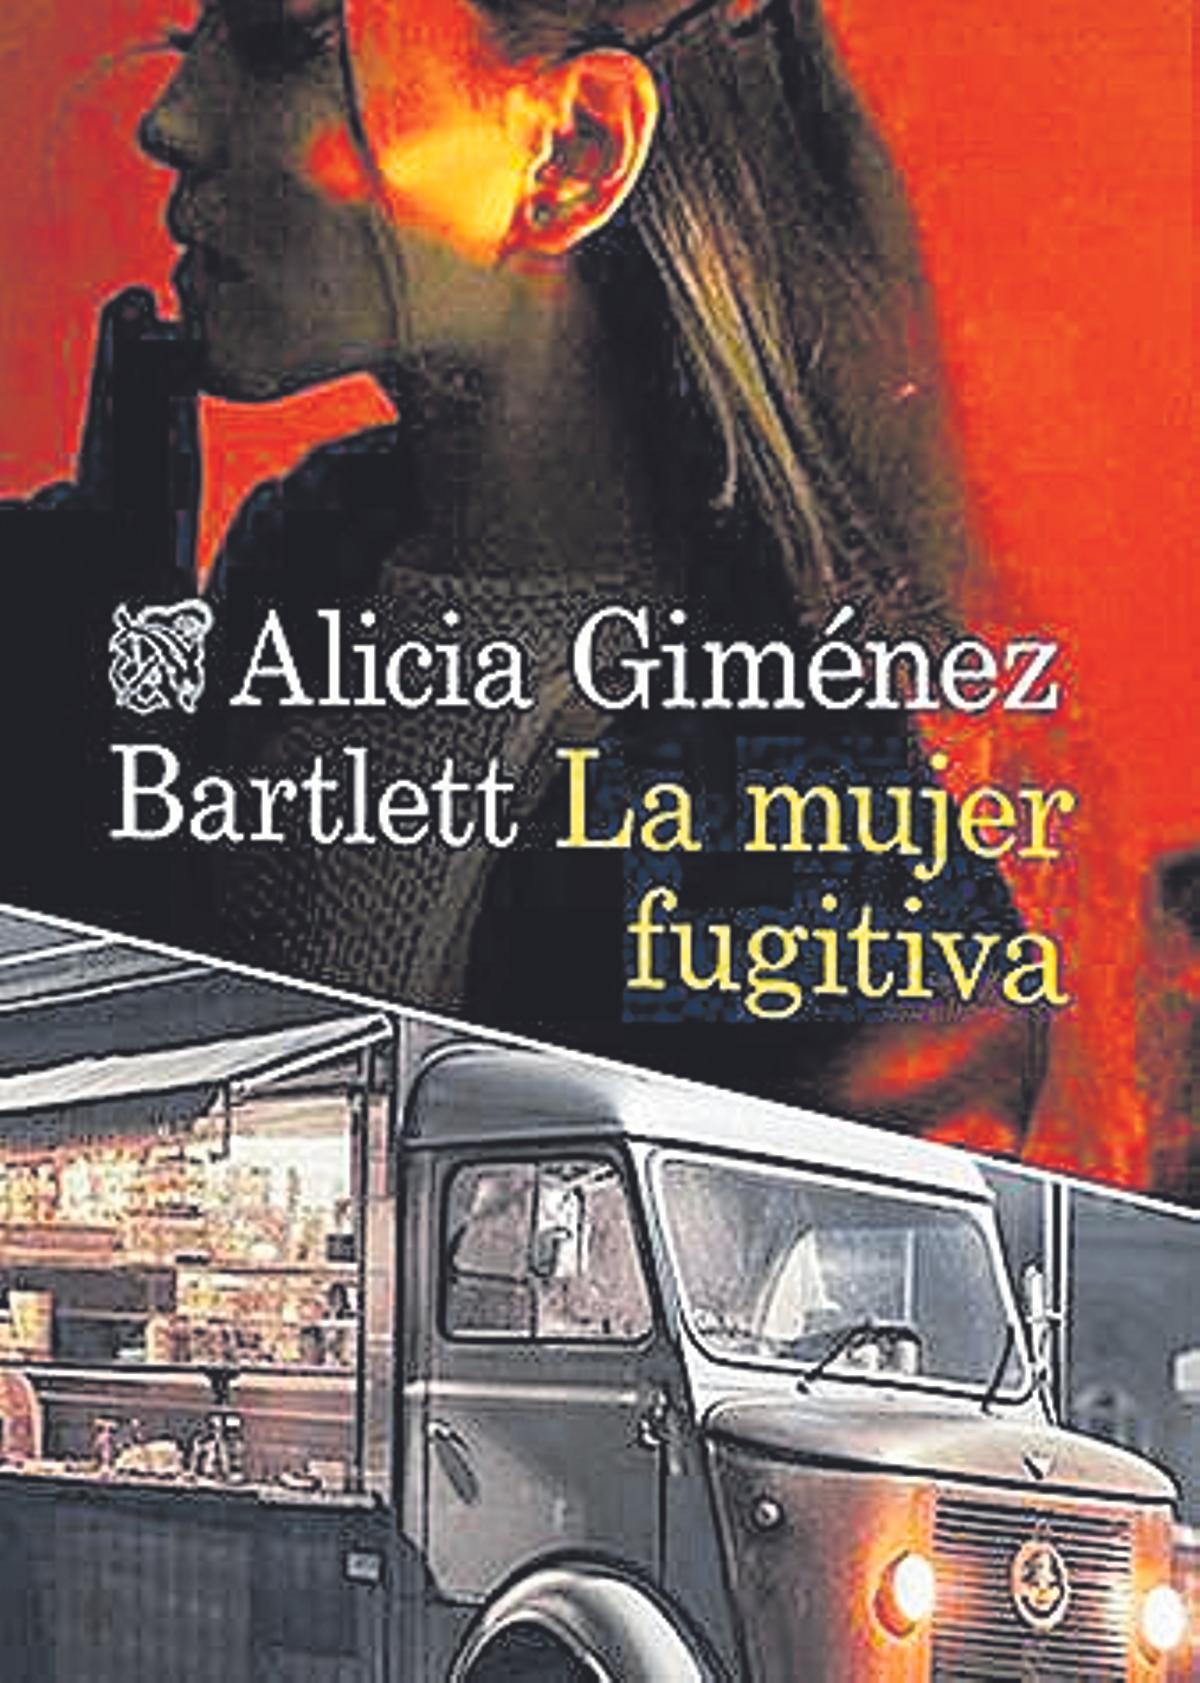 Alicia Giménez Bartlett  La mujer fugitiva  Destino   440 páginas / 19,90 euros